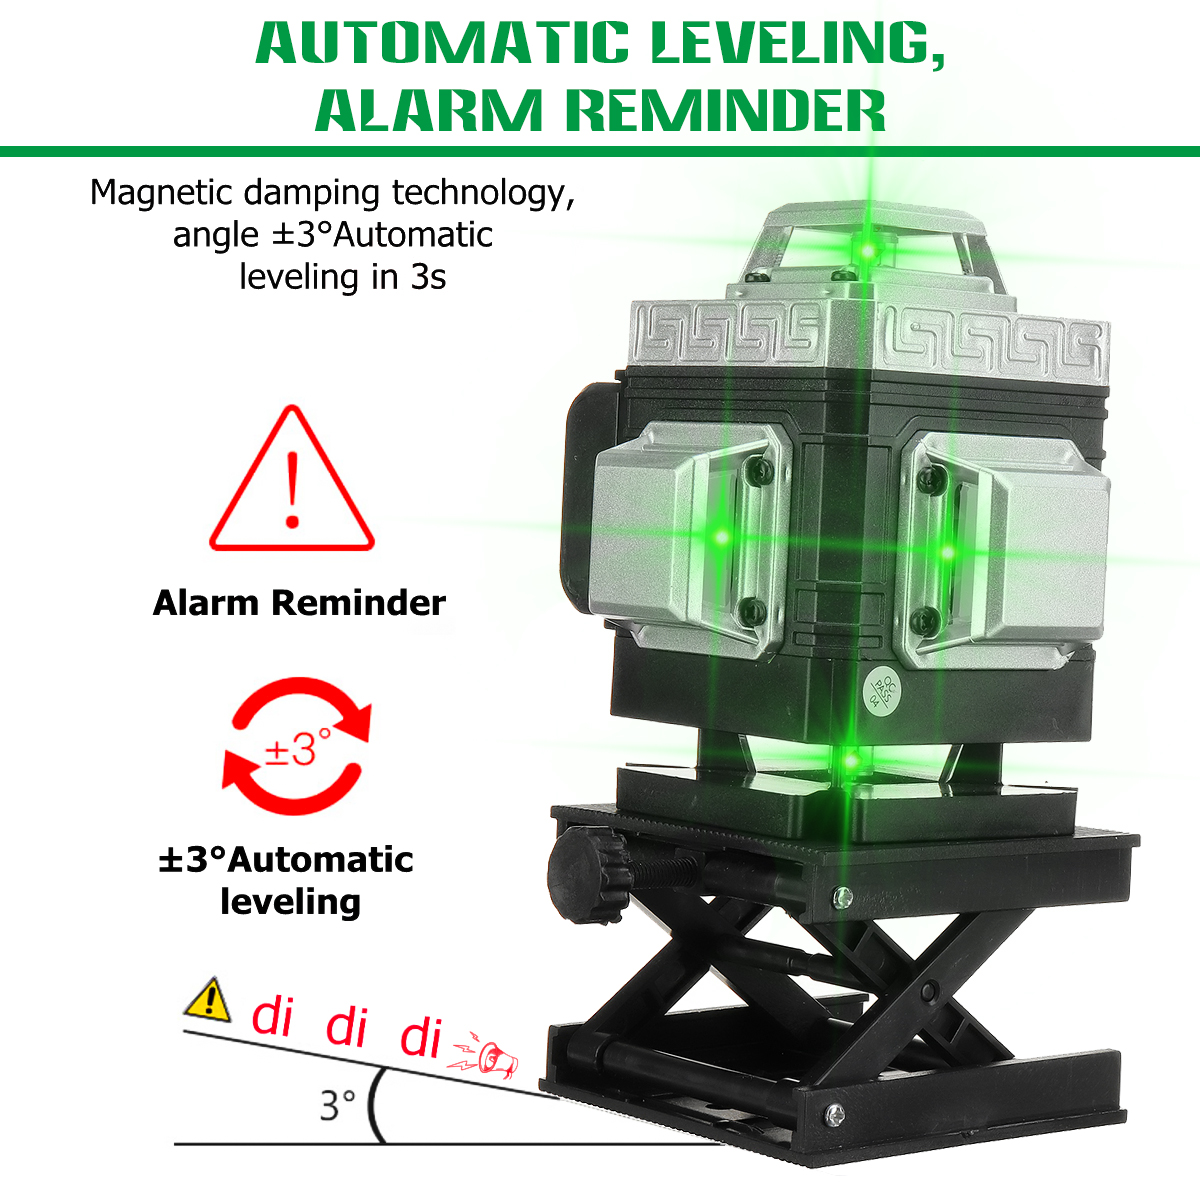 81216-Line-360deg-4D-Line-Laser-Level-Green-Light-Self-Leveling-Cross-Measure-Tool-Kit-1864007-5